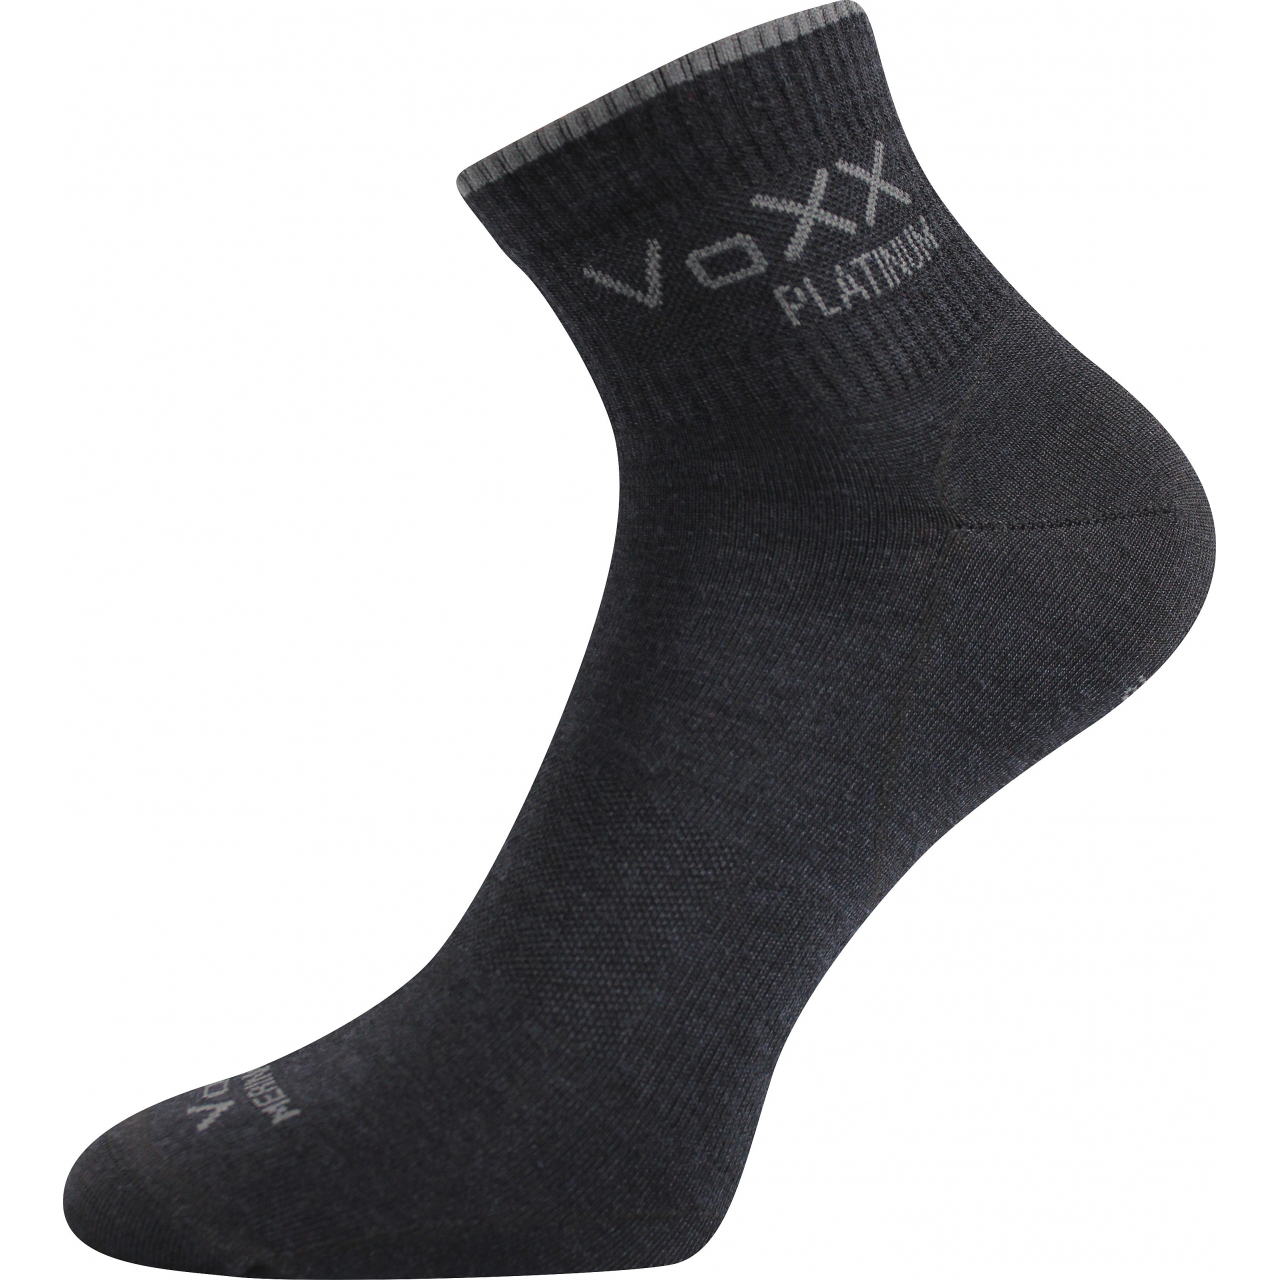 Ponožky klasické unisex Voxx Radik - černé, 35-38